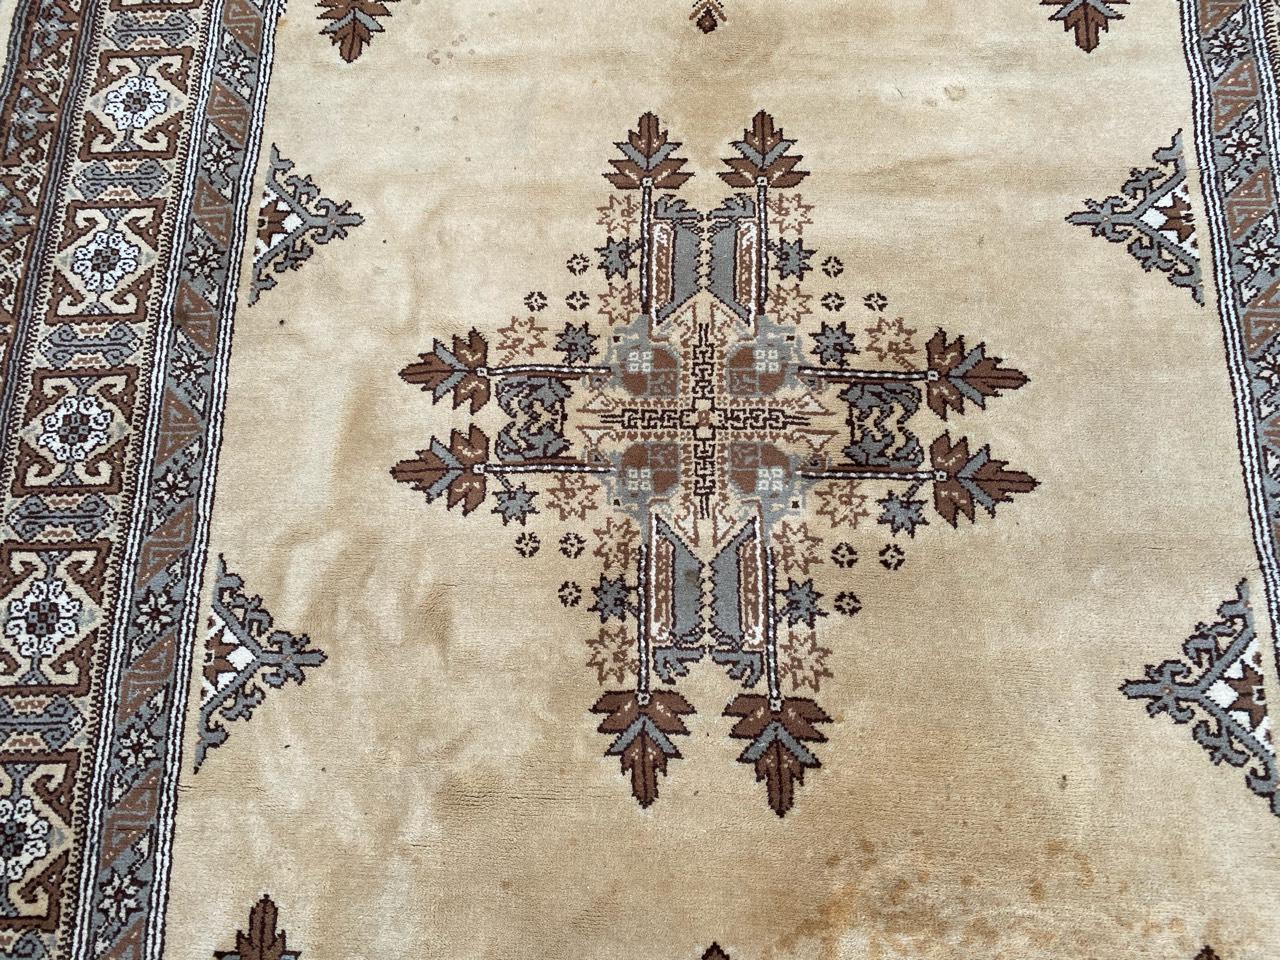 Magnifique tapis marocain avec un joli design tribal et des couleurs jaunes et brunes, entièrement noué à la main avec du velours de laine sur une base de coton.

✨✨✨
